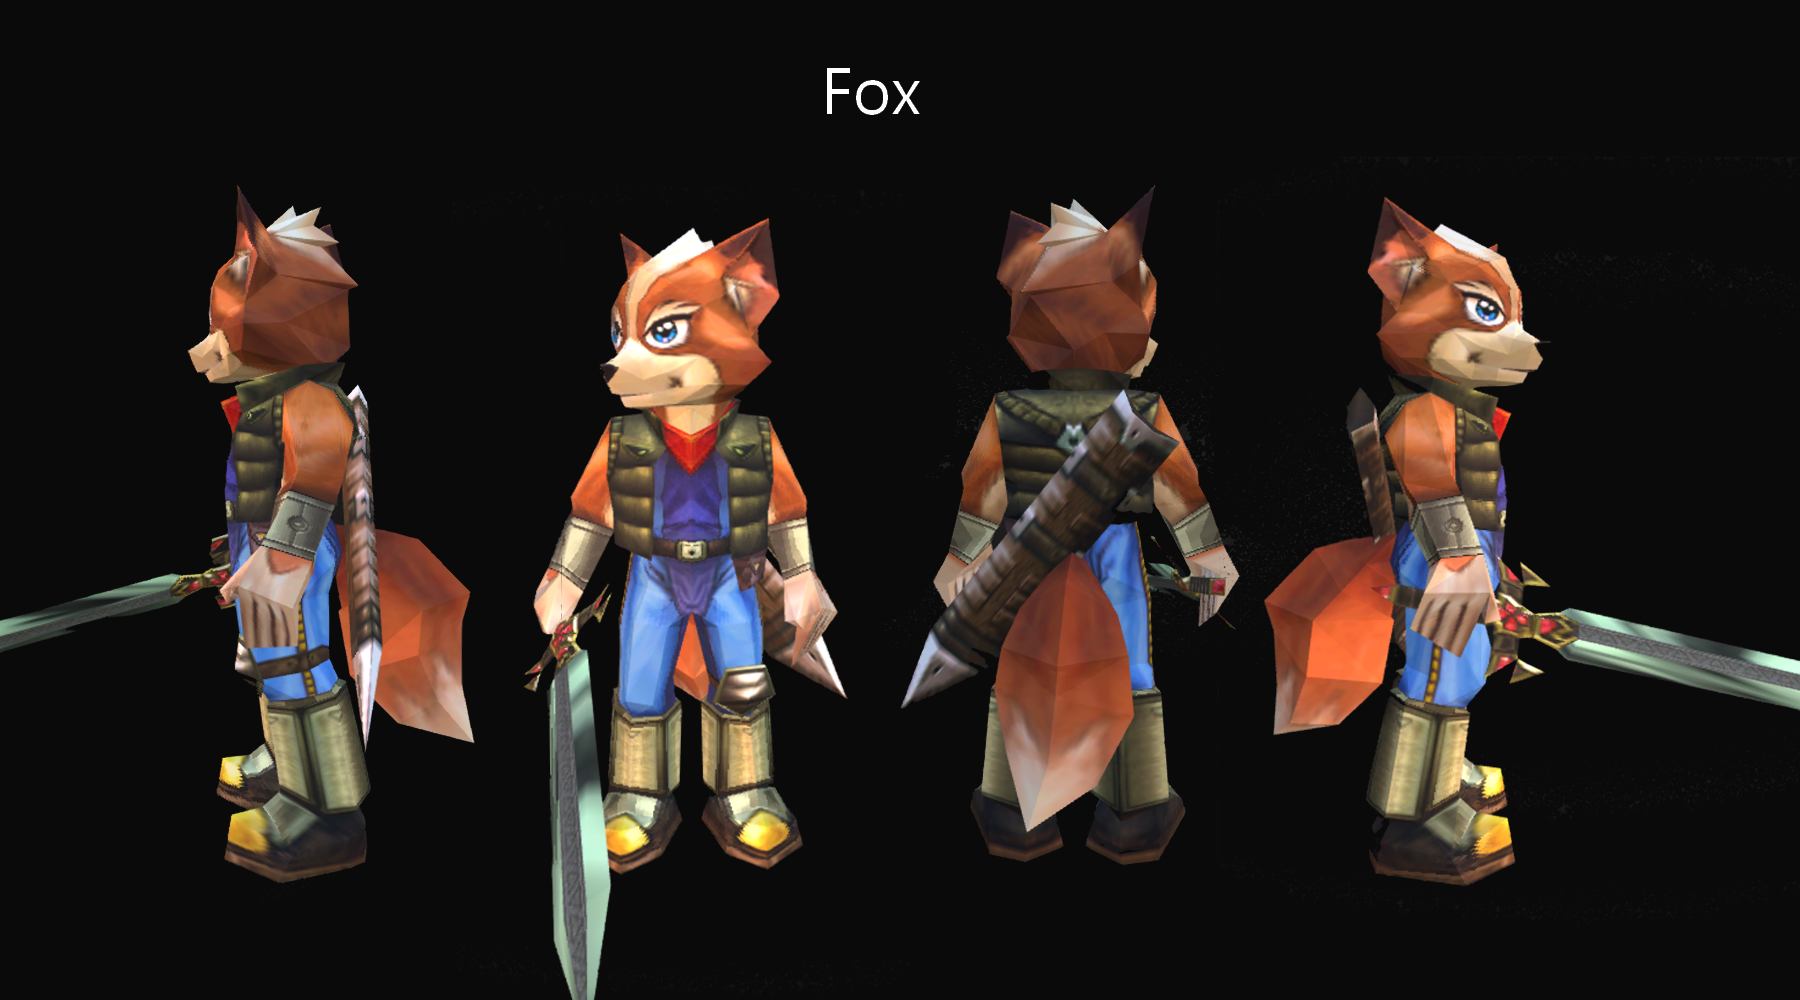 Star Fox versus the future